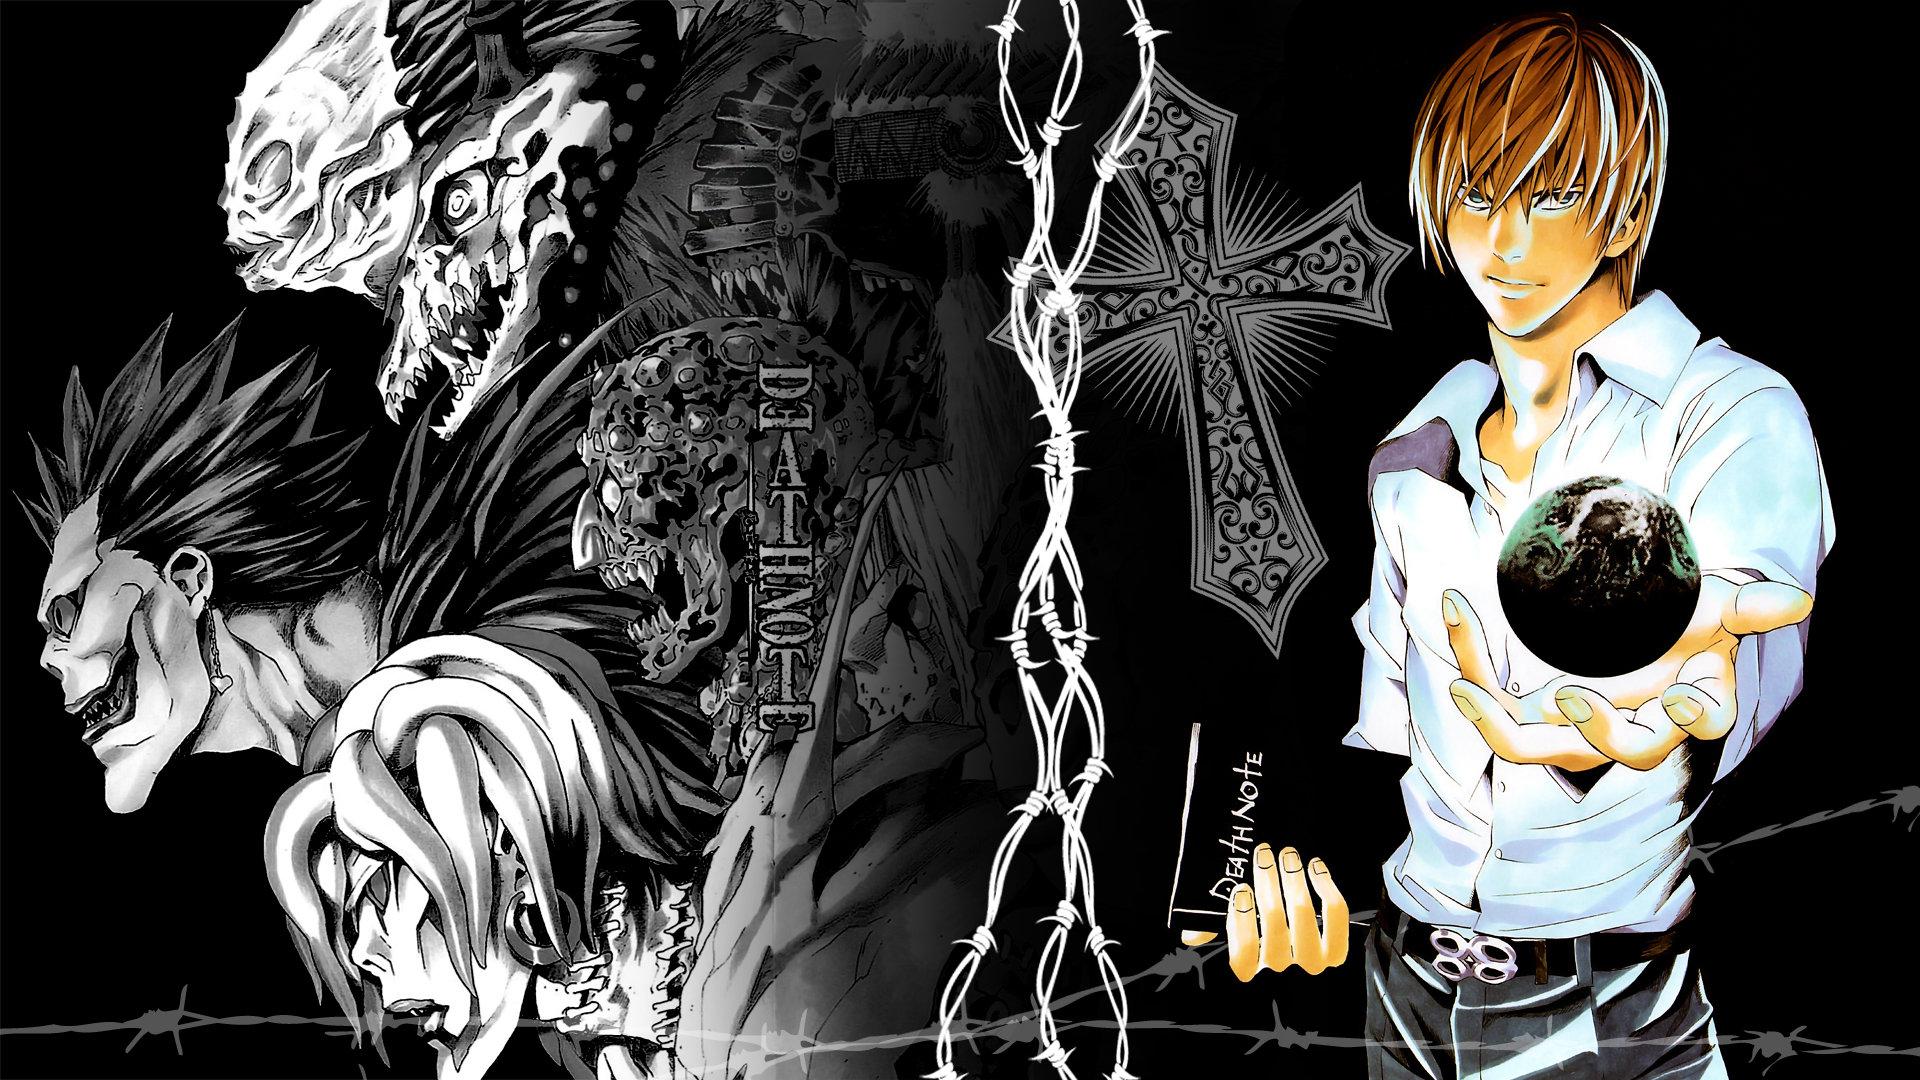 Dark Anime Wallpaper 4k Pc Death Note Death Note 4k Wallpapers Top Free
Death Note 4k Backgrounds